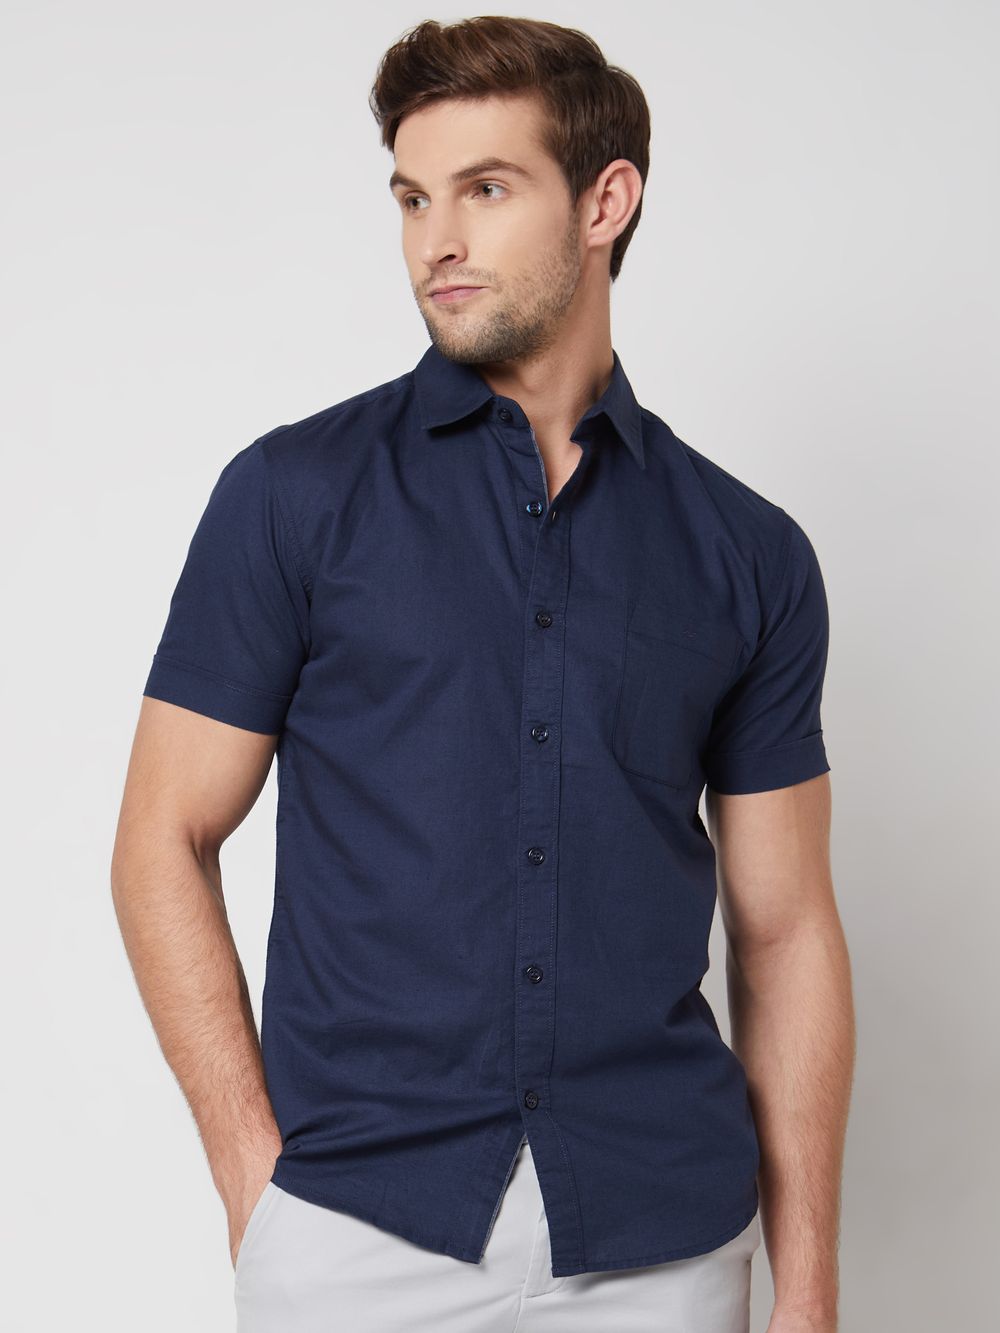 Navy Cotton Linen Plain Slim Fit Casual Shirt